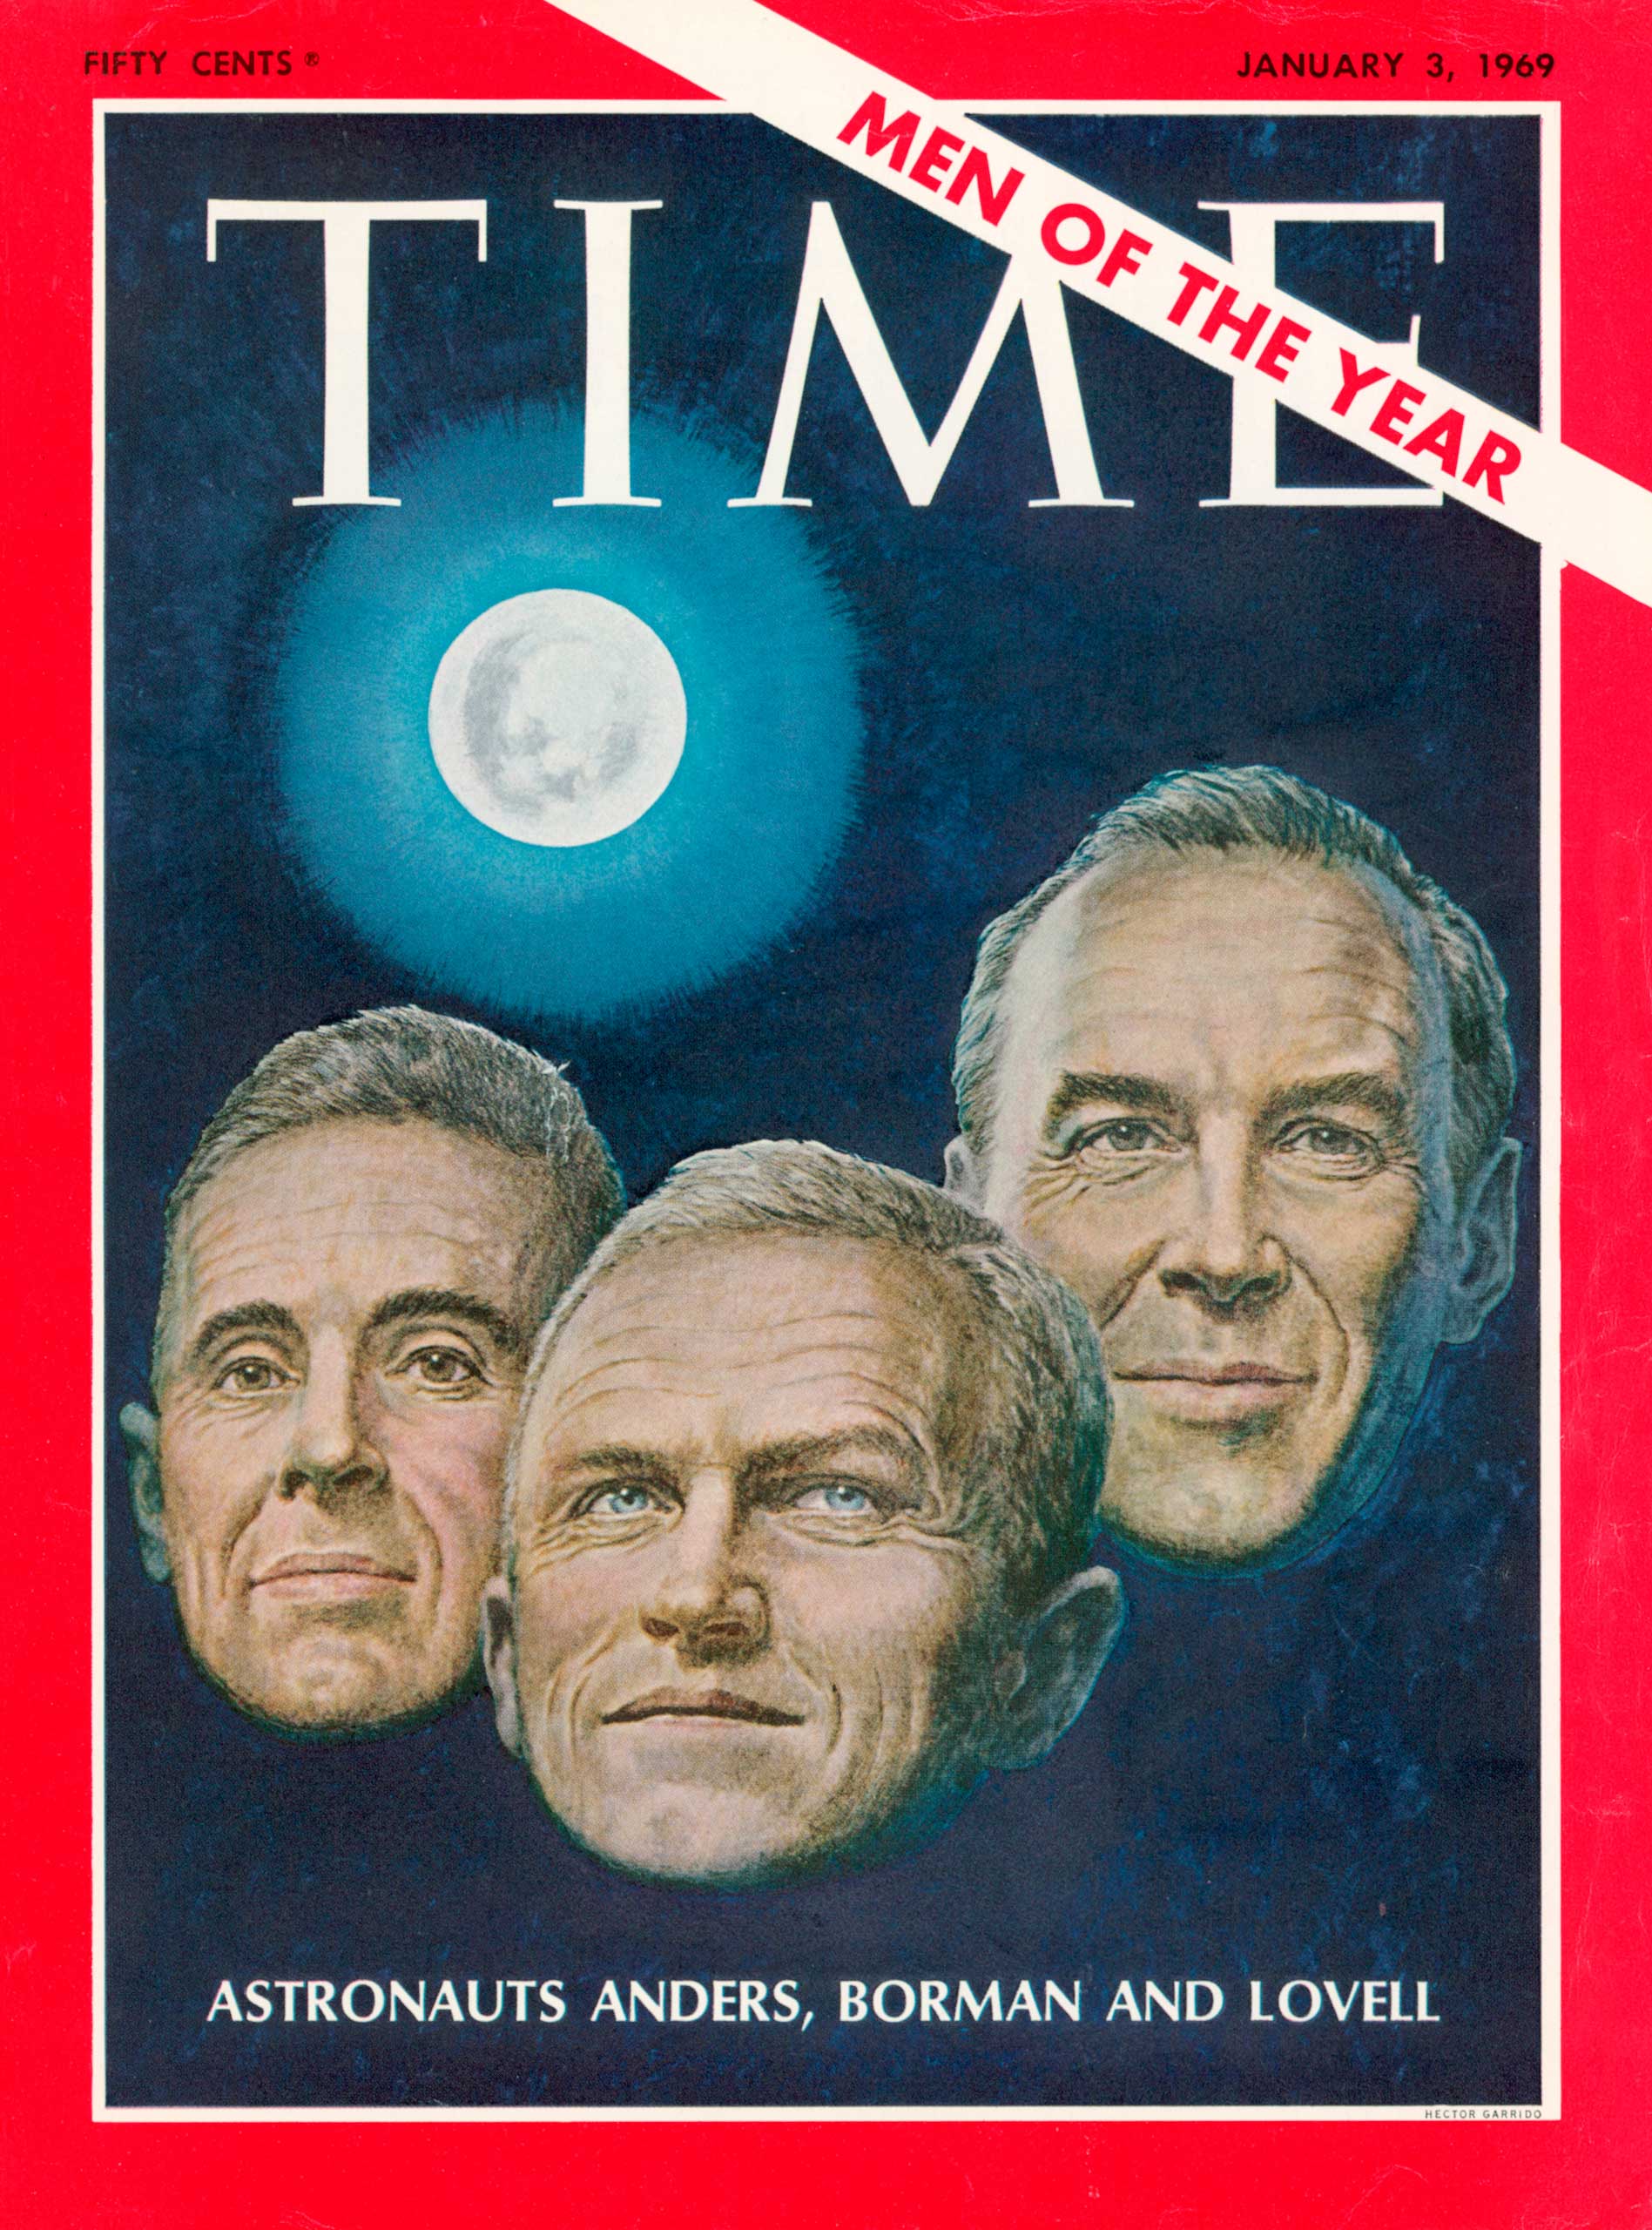 1968: The Apollo 8 astronauts